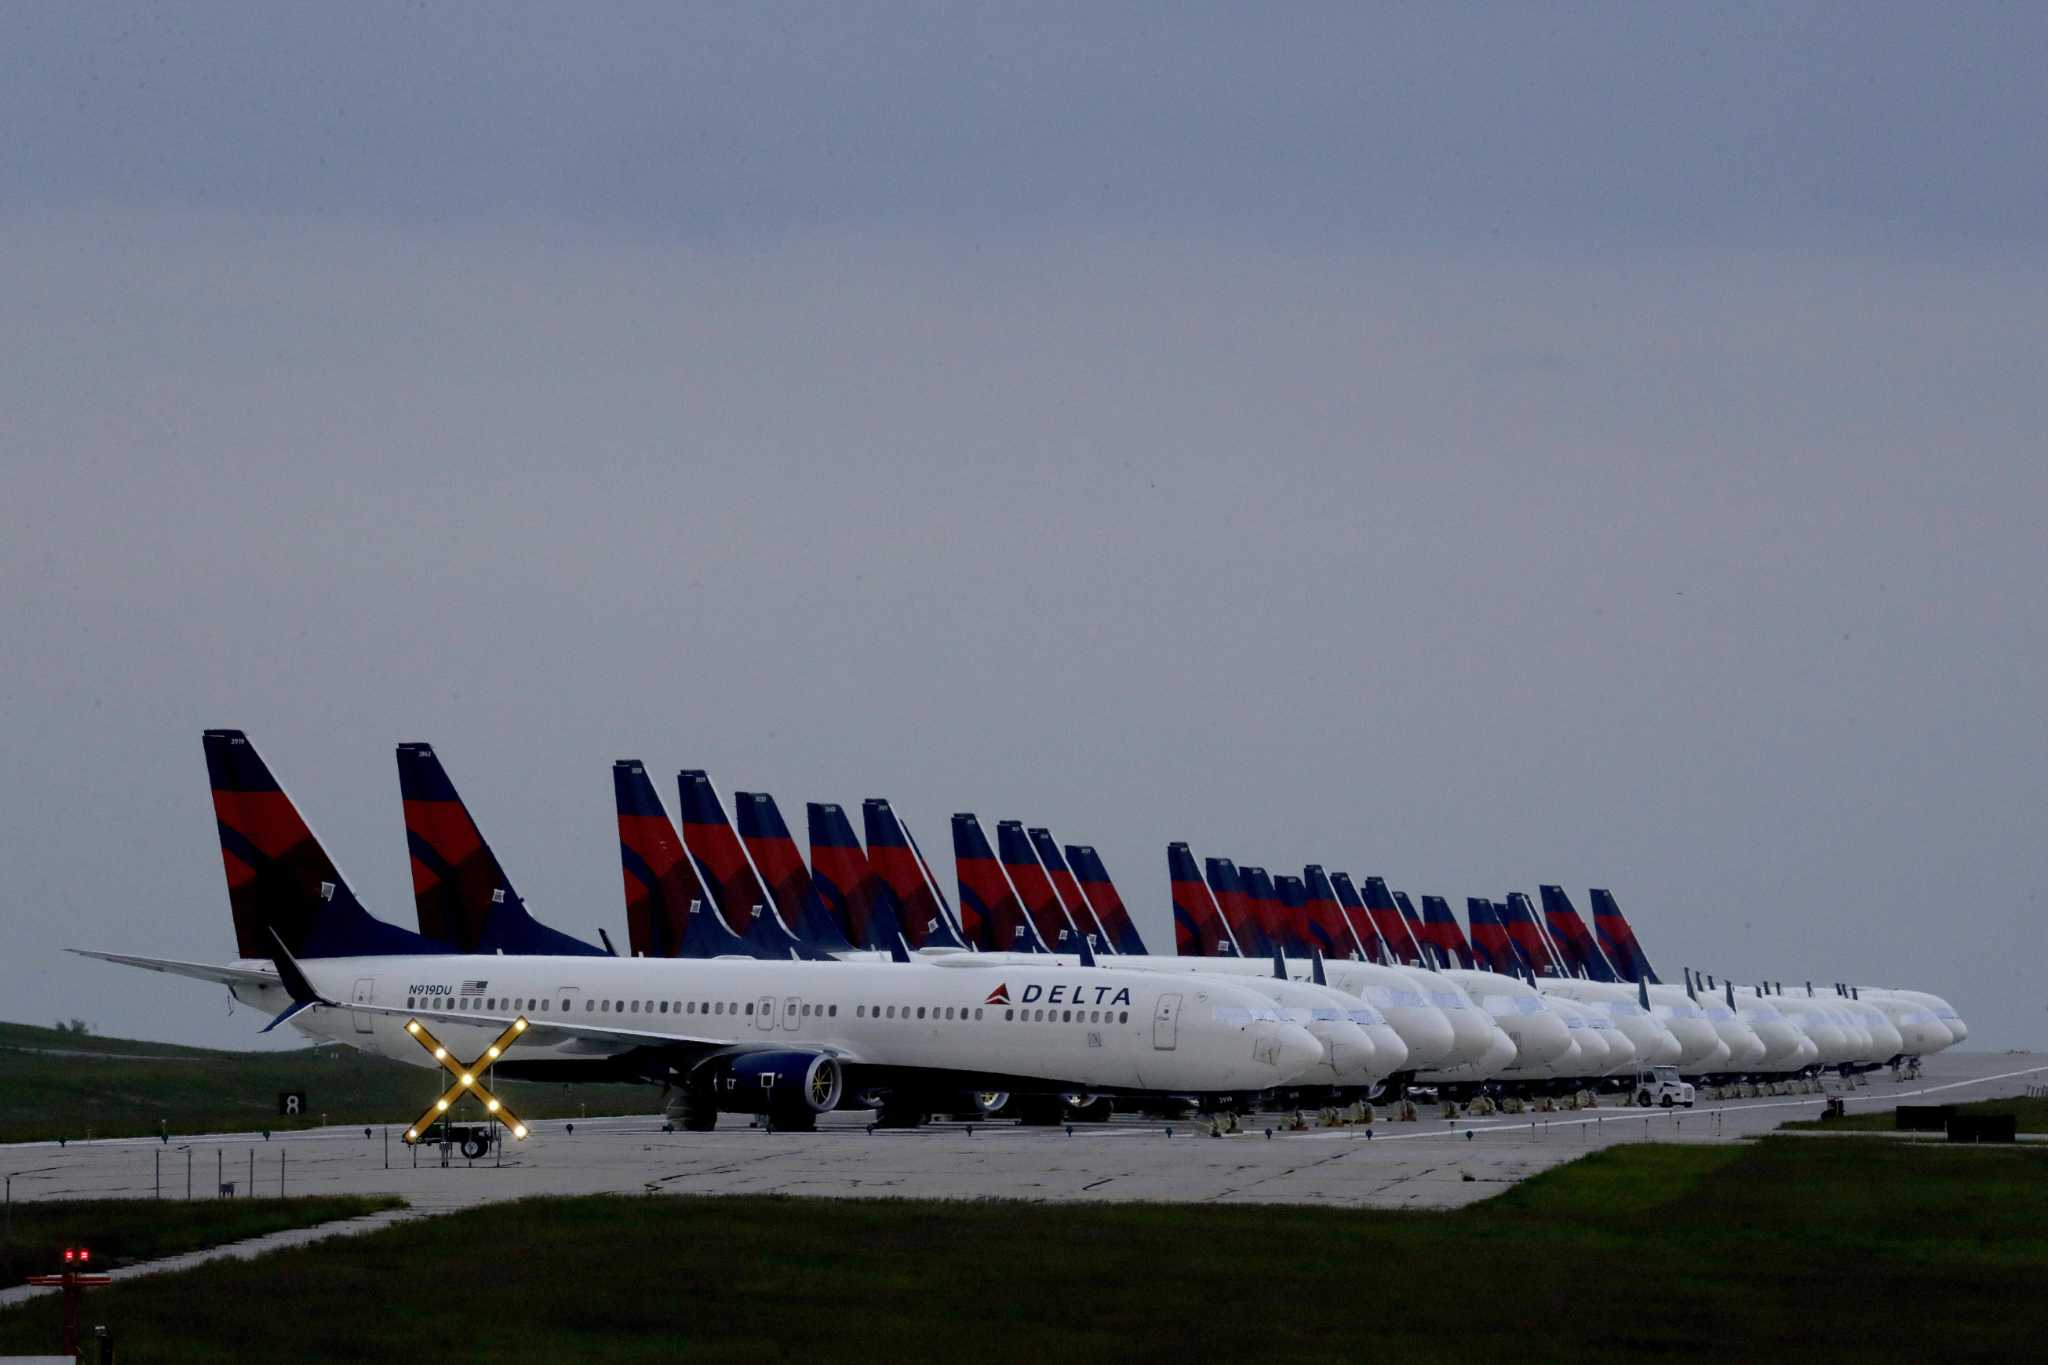 Delta flight from Hartford to Atlanta diverted for “maintenance issue”